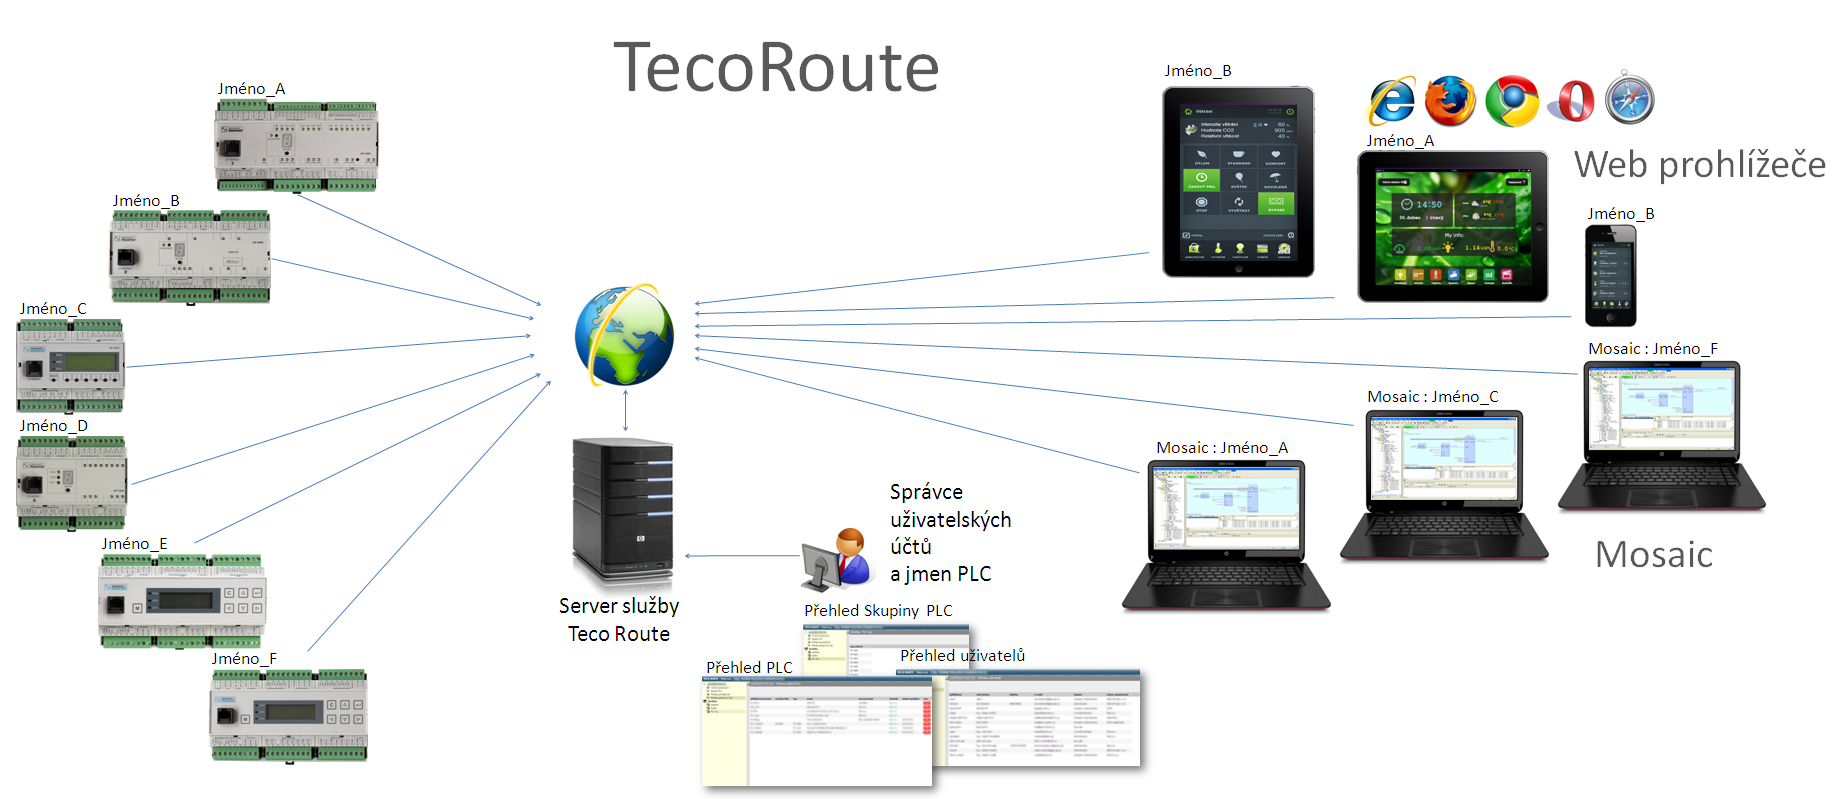 1 ÚVOD slouží ke vzdálené správě PLC Tecomat přes internet. Službu poskytuje společnost Teco pro systémy Tecomat Foxtrot a Tecomat TC700.